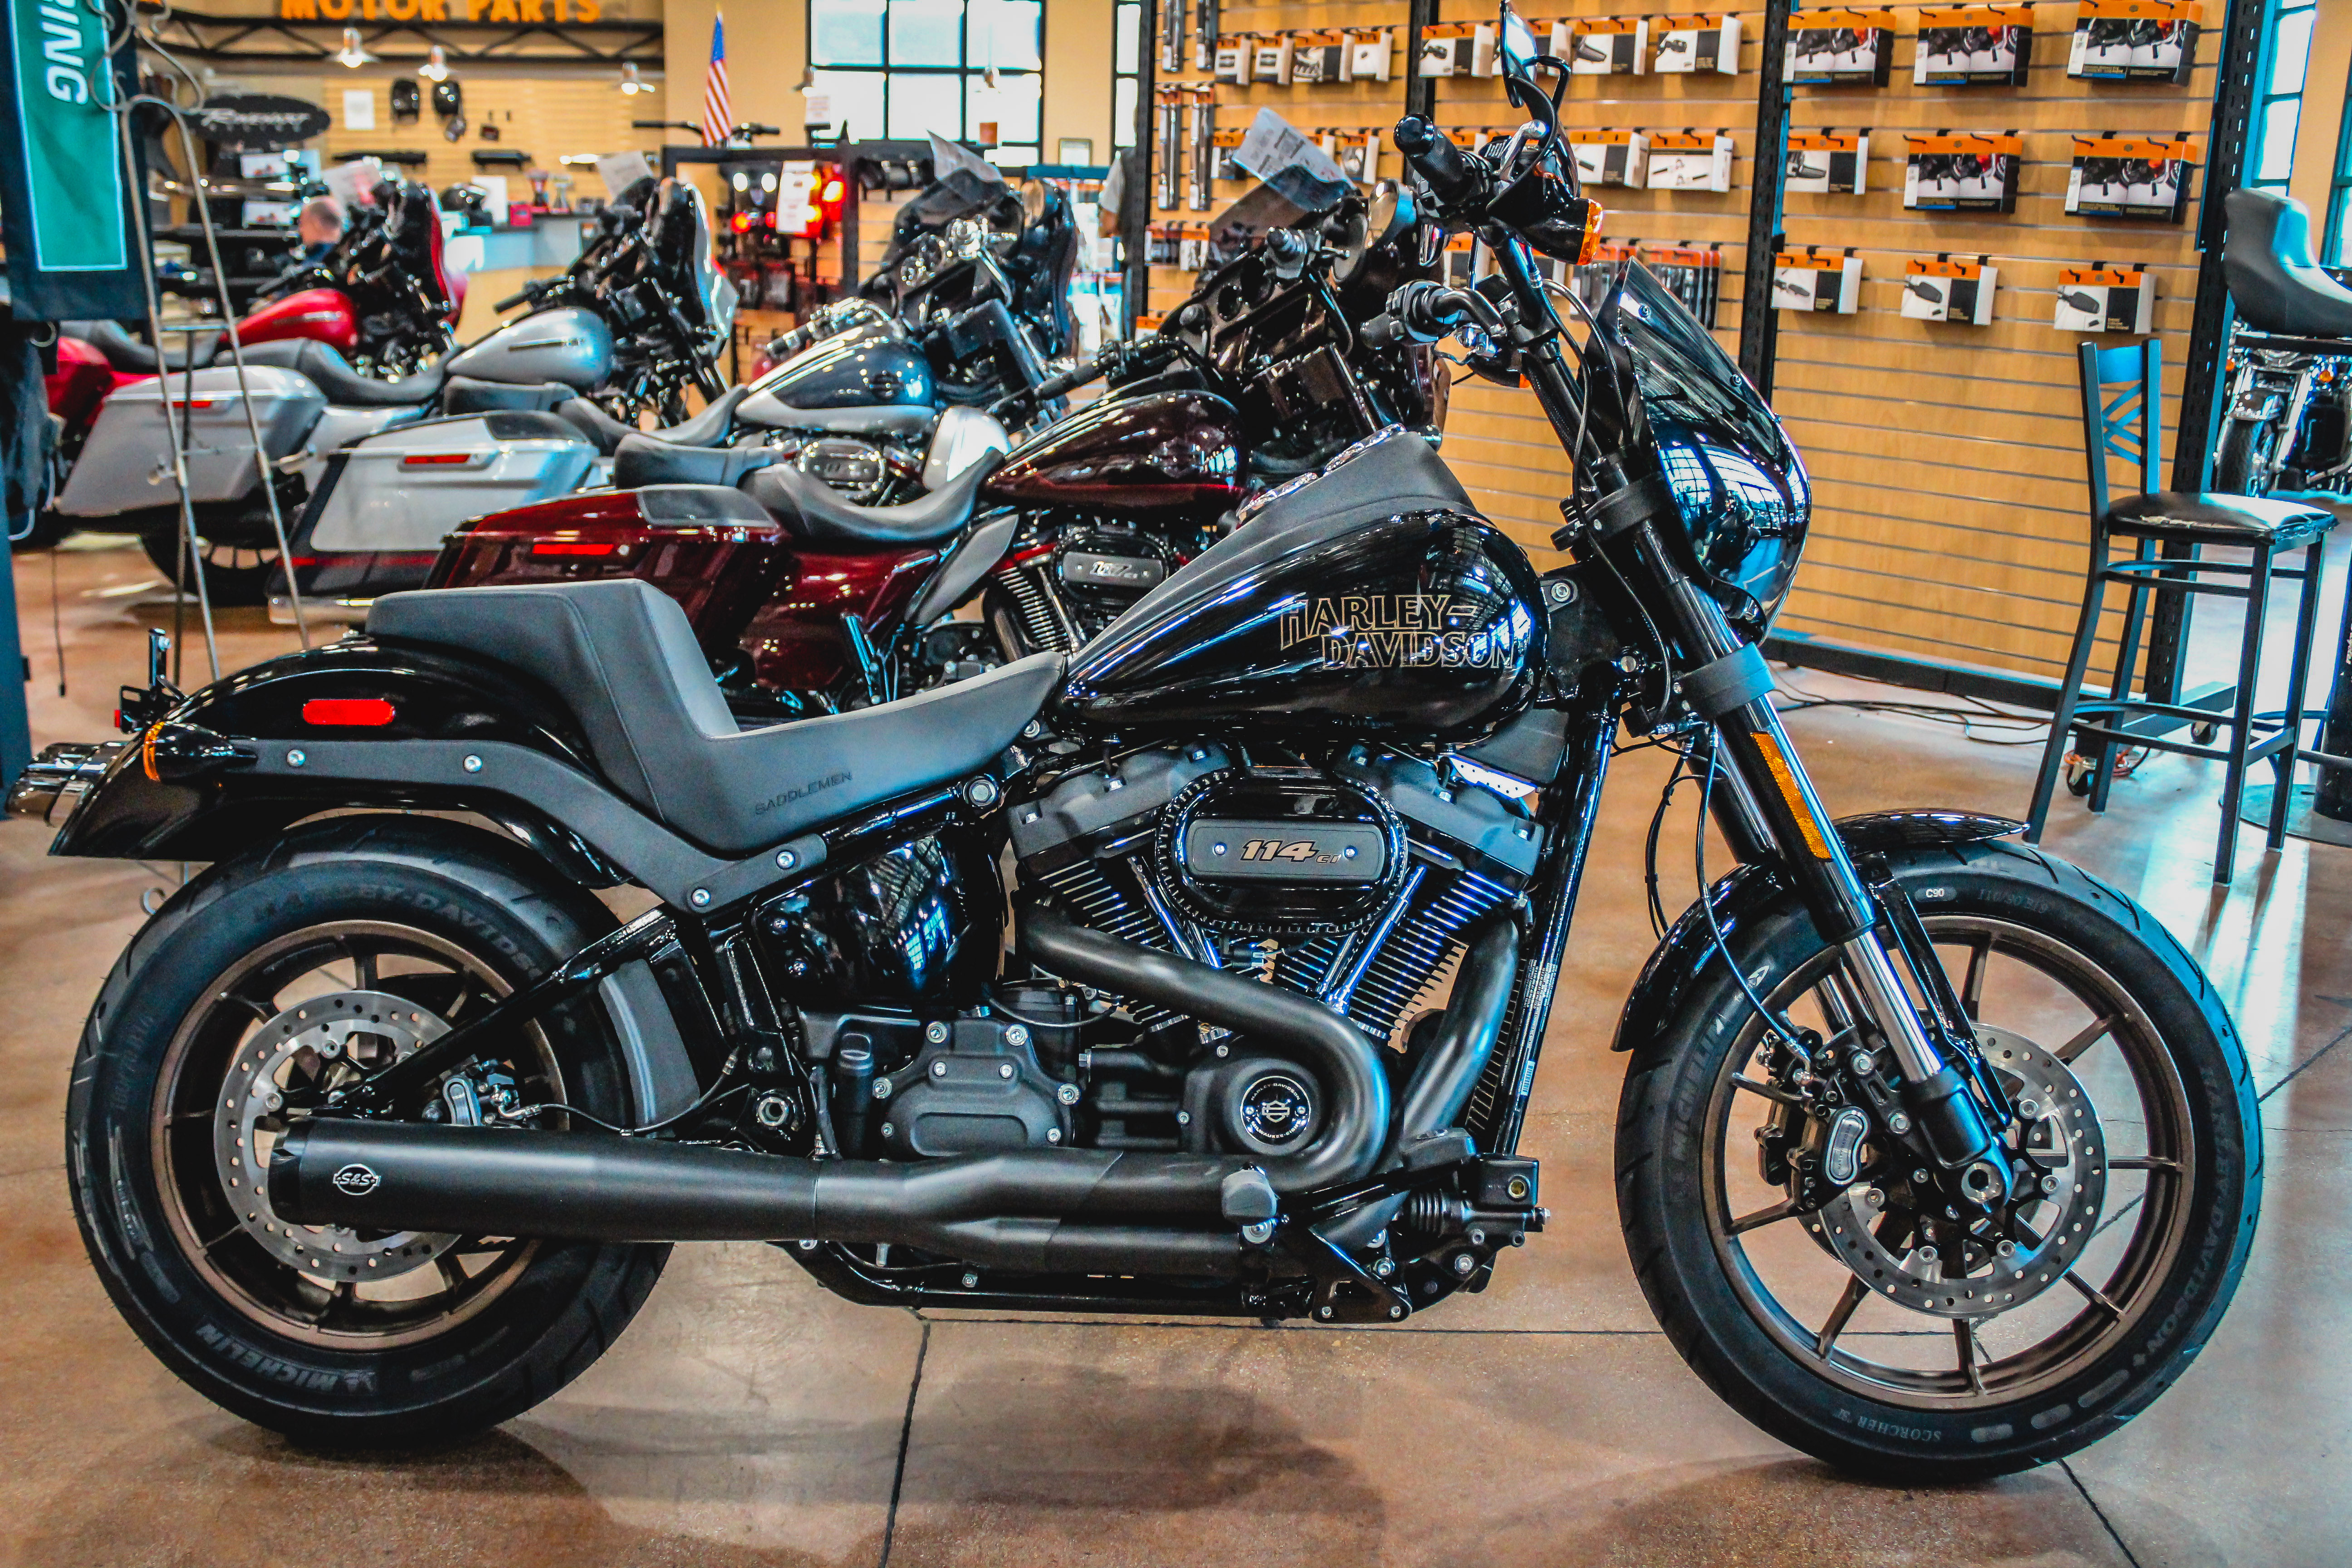 New 2020 Harley-Davidson Low Rider S in El Cajon #D020544 | El Cajon